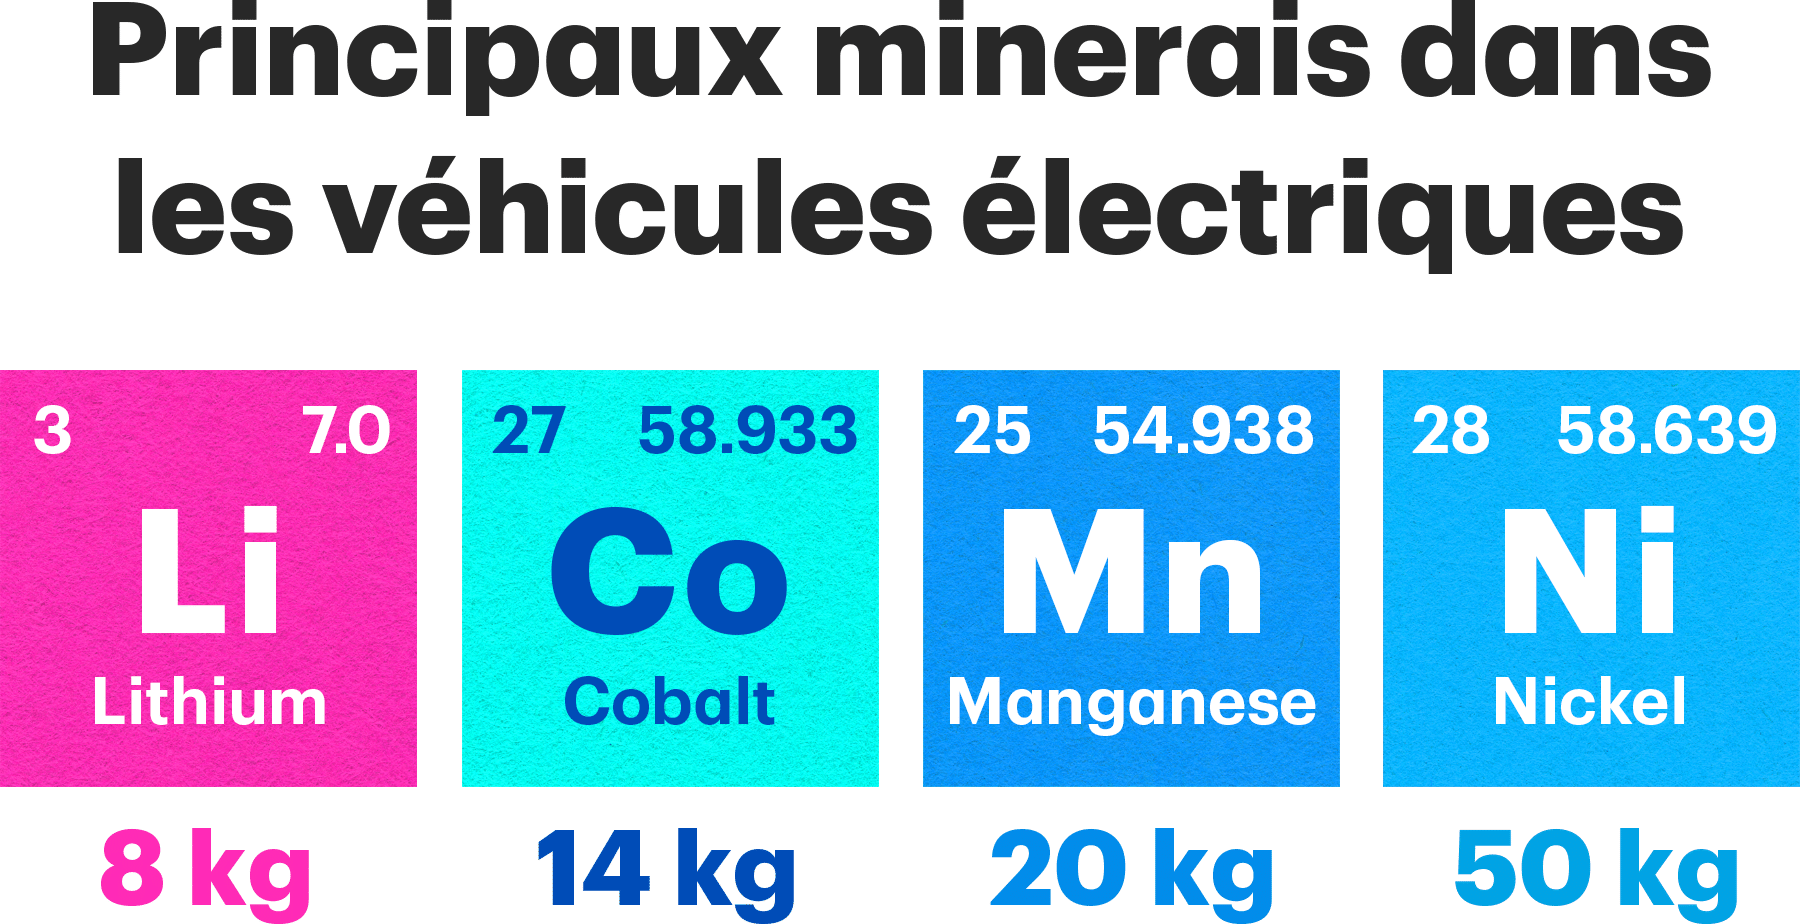 Principaux minerais dans les véhicules électriques : Lithium (Li) 8 kg, Cobalt (Co) 14 kg, Manganèse (Mn) 20 kg, Nickel (Ni) 50 kg